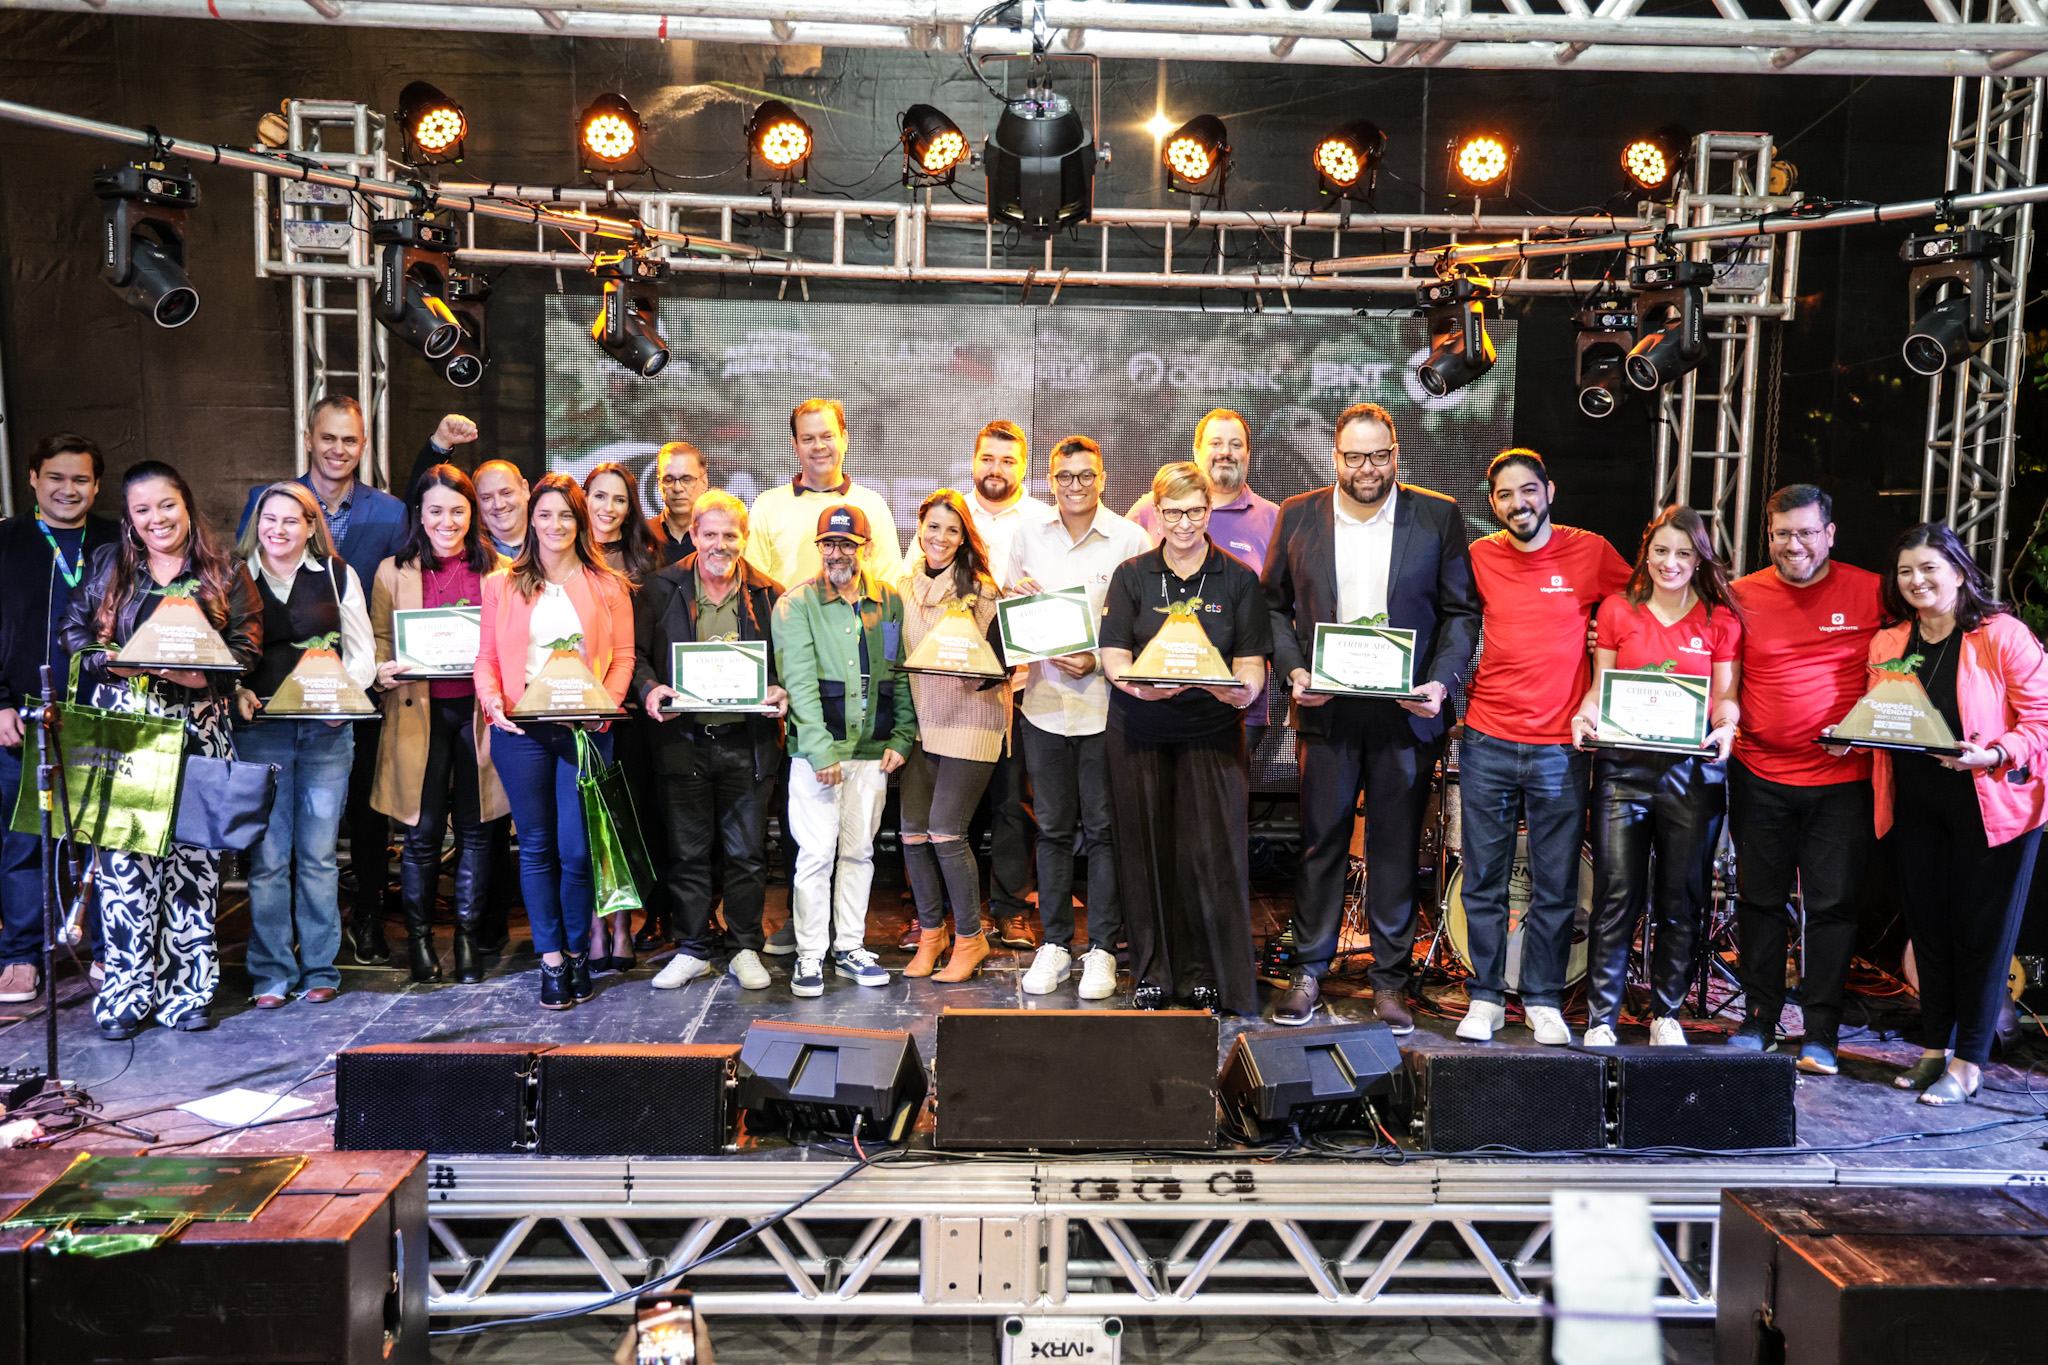 Premiados da segunda edição da campanha "Campeões de Vendas" do Grupo Oceanic